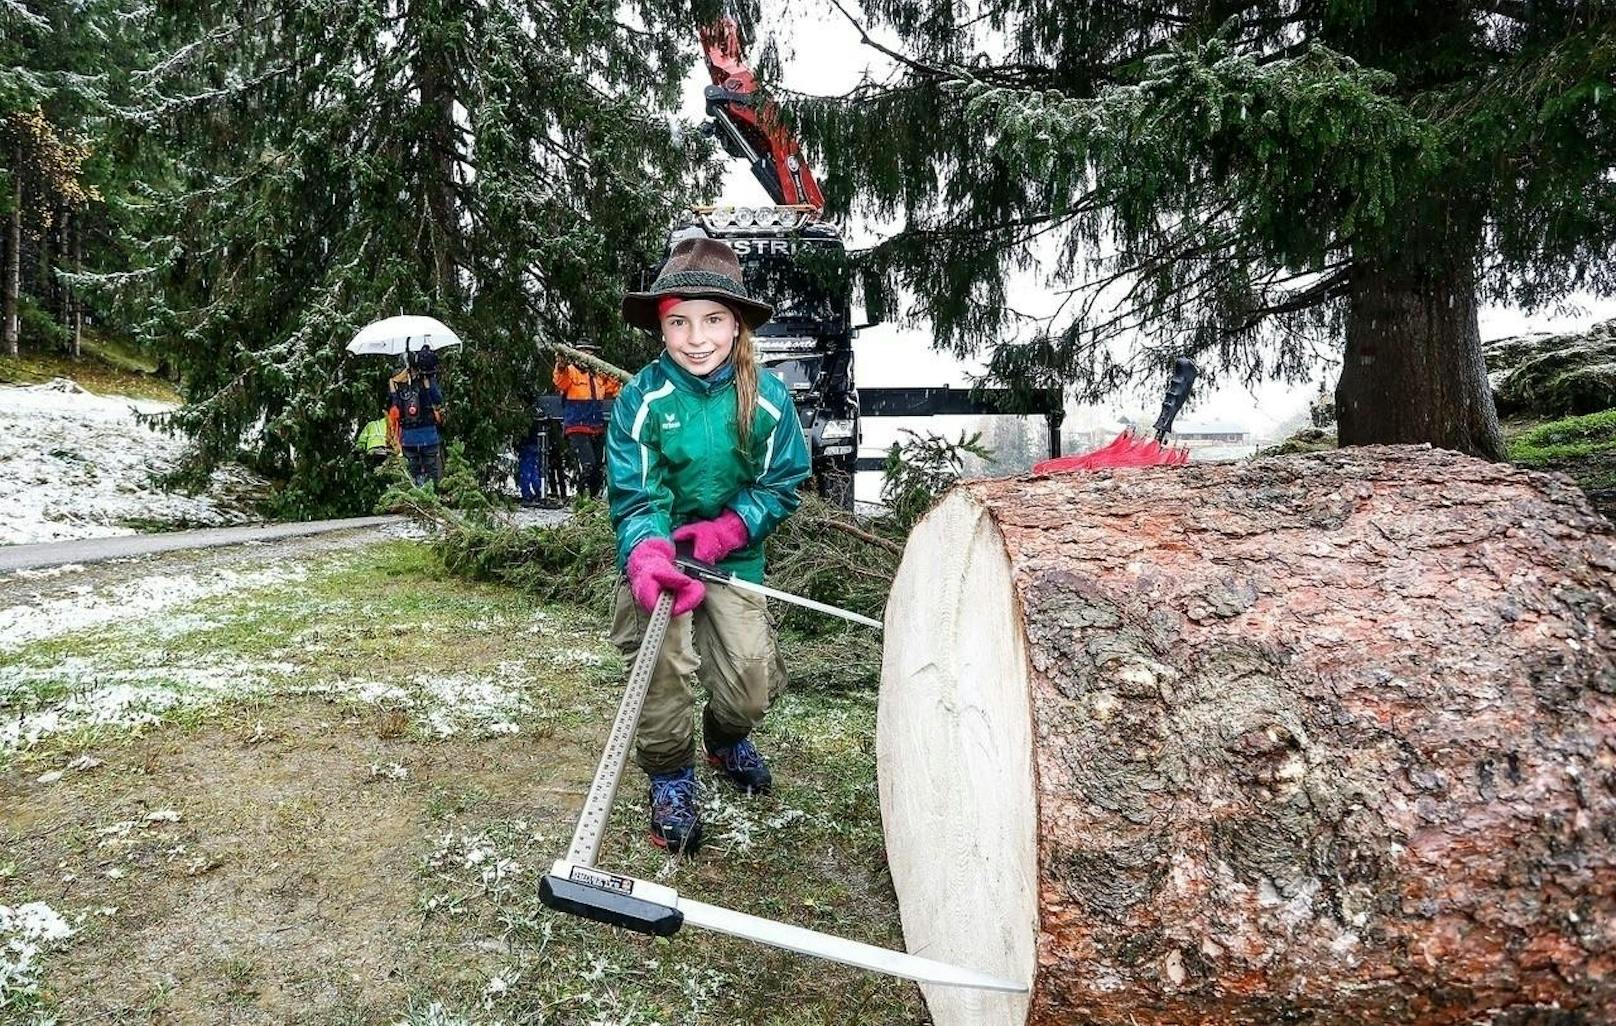 Aus dem restlichen Stamm wird die Embacher Wald- und Weidegemeinschaft auch eine Stammscheibe anfertigen. Kleine Taferln sollen später wichtige Jahreszahlen und Ereignisse im Leben des Baumes markieren.